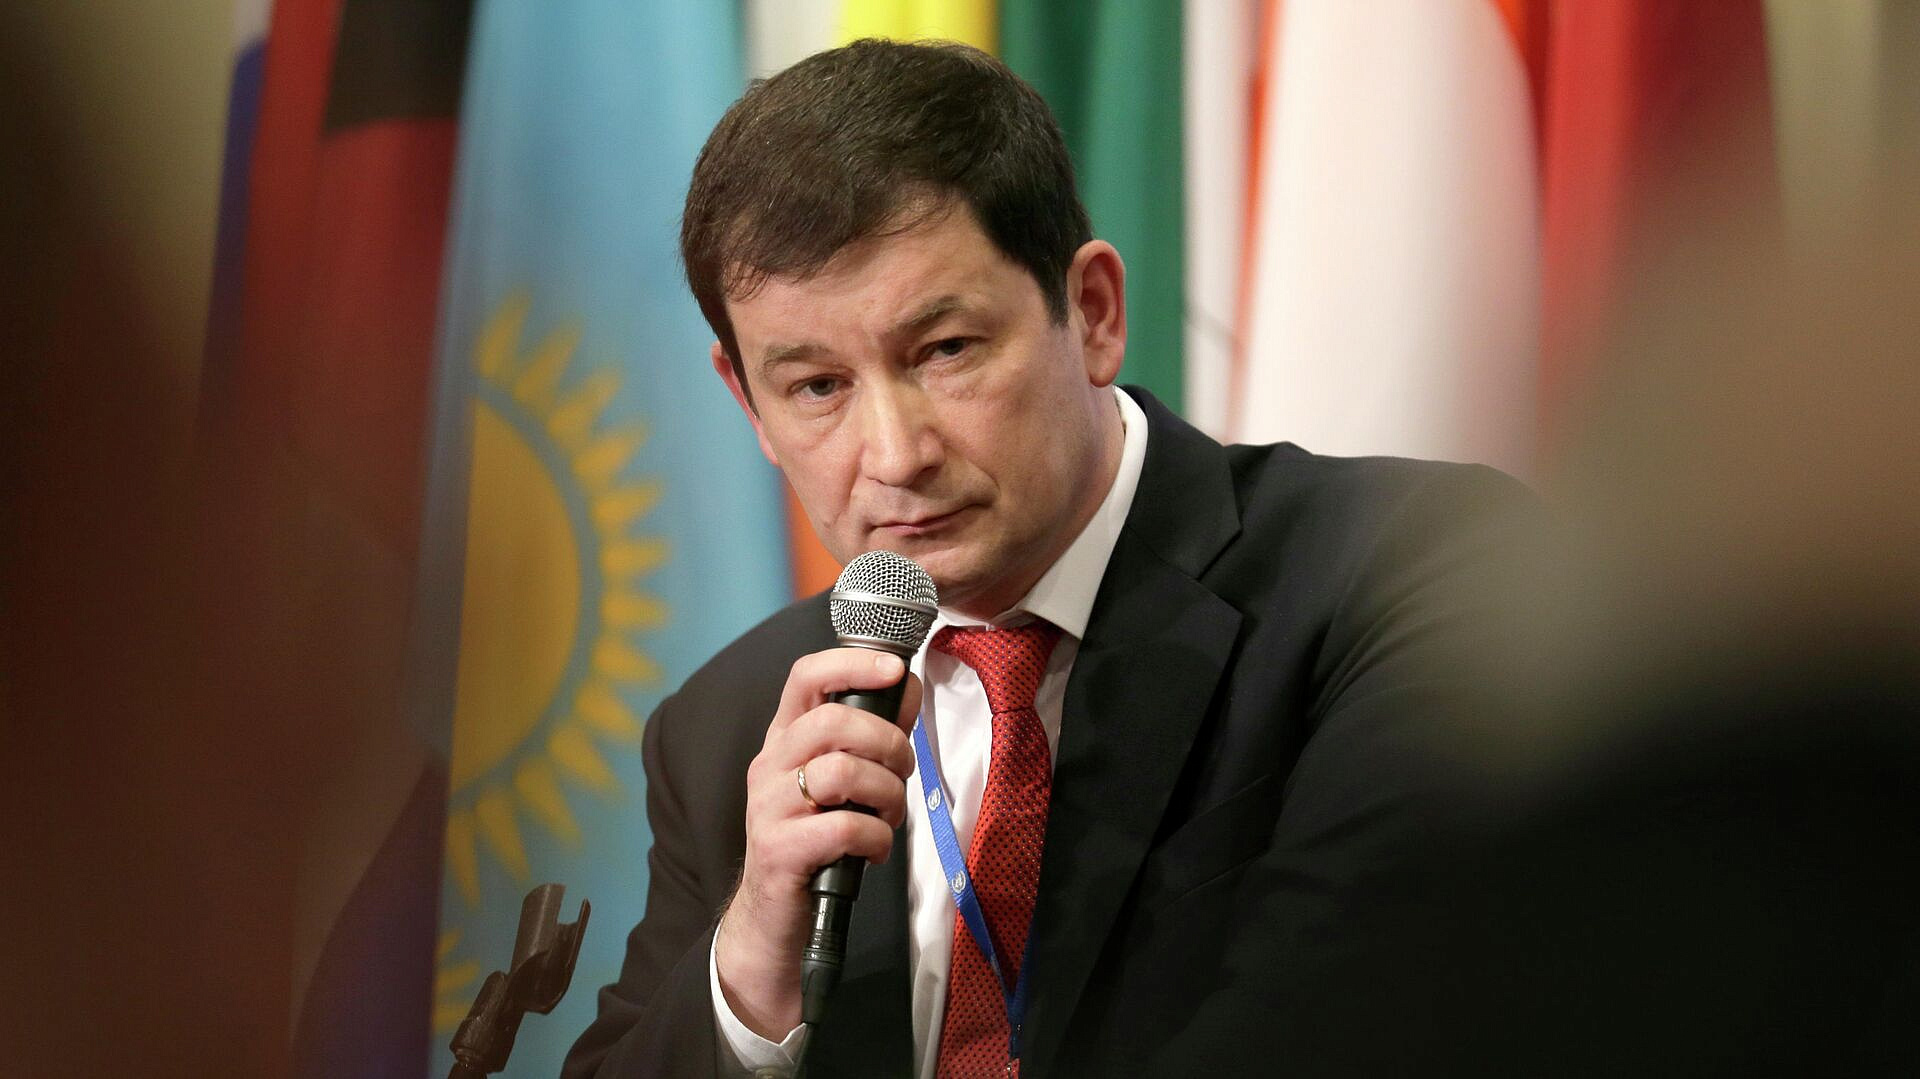 Узбекистан ввел санкции против россии